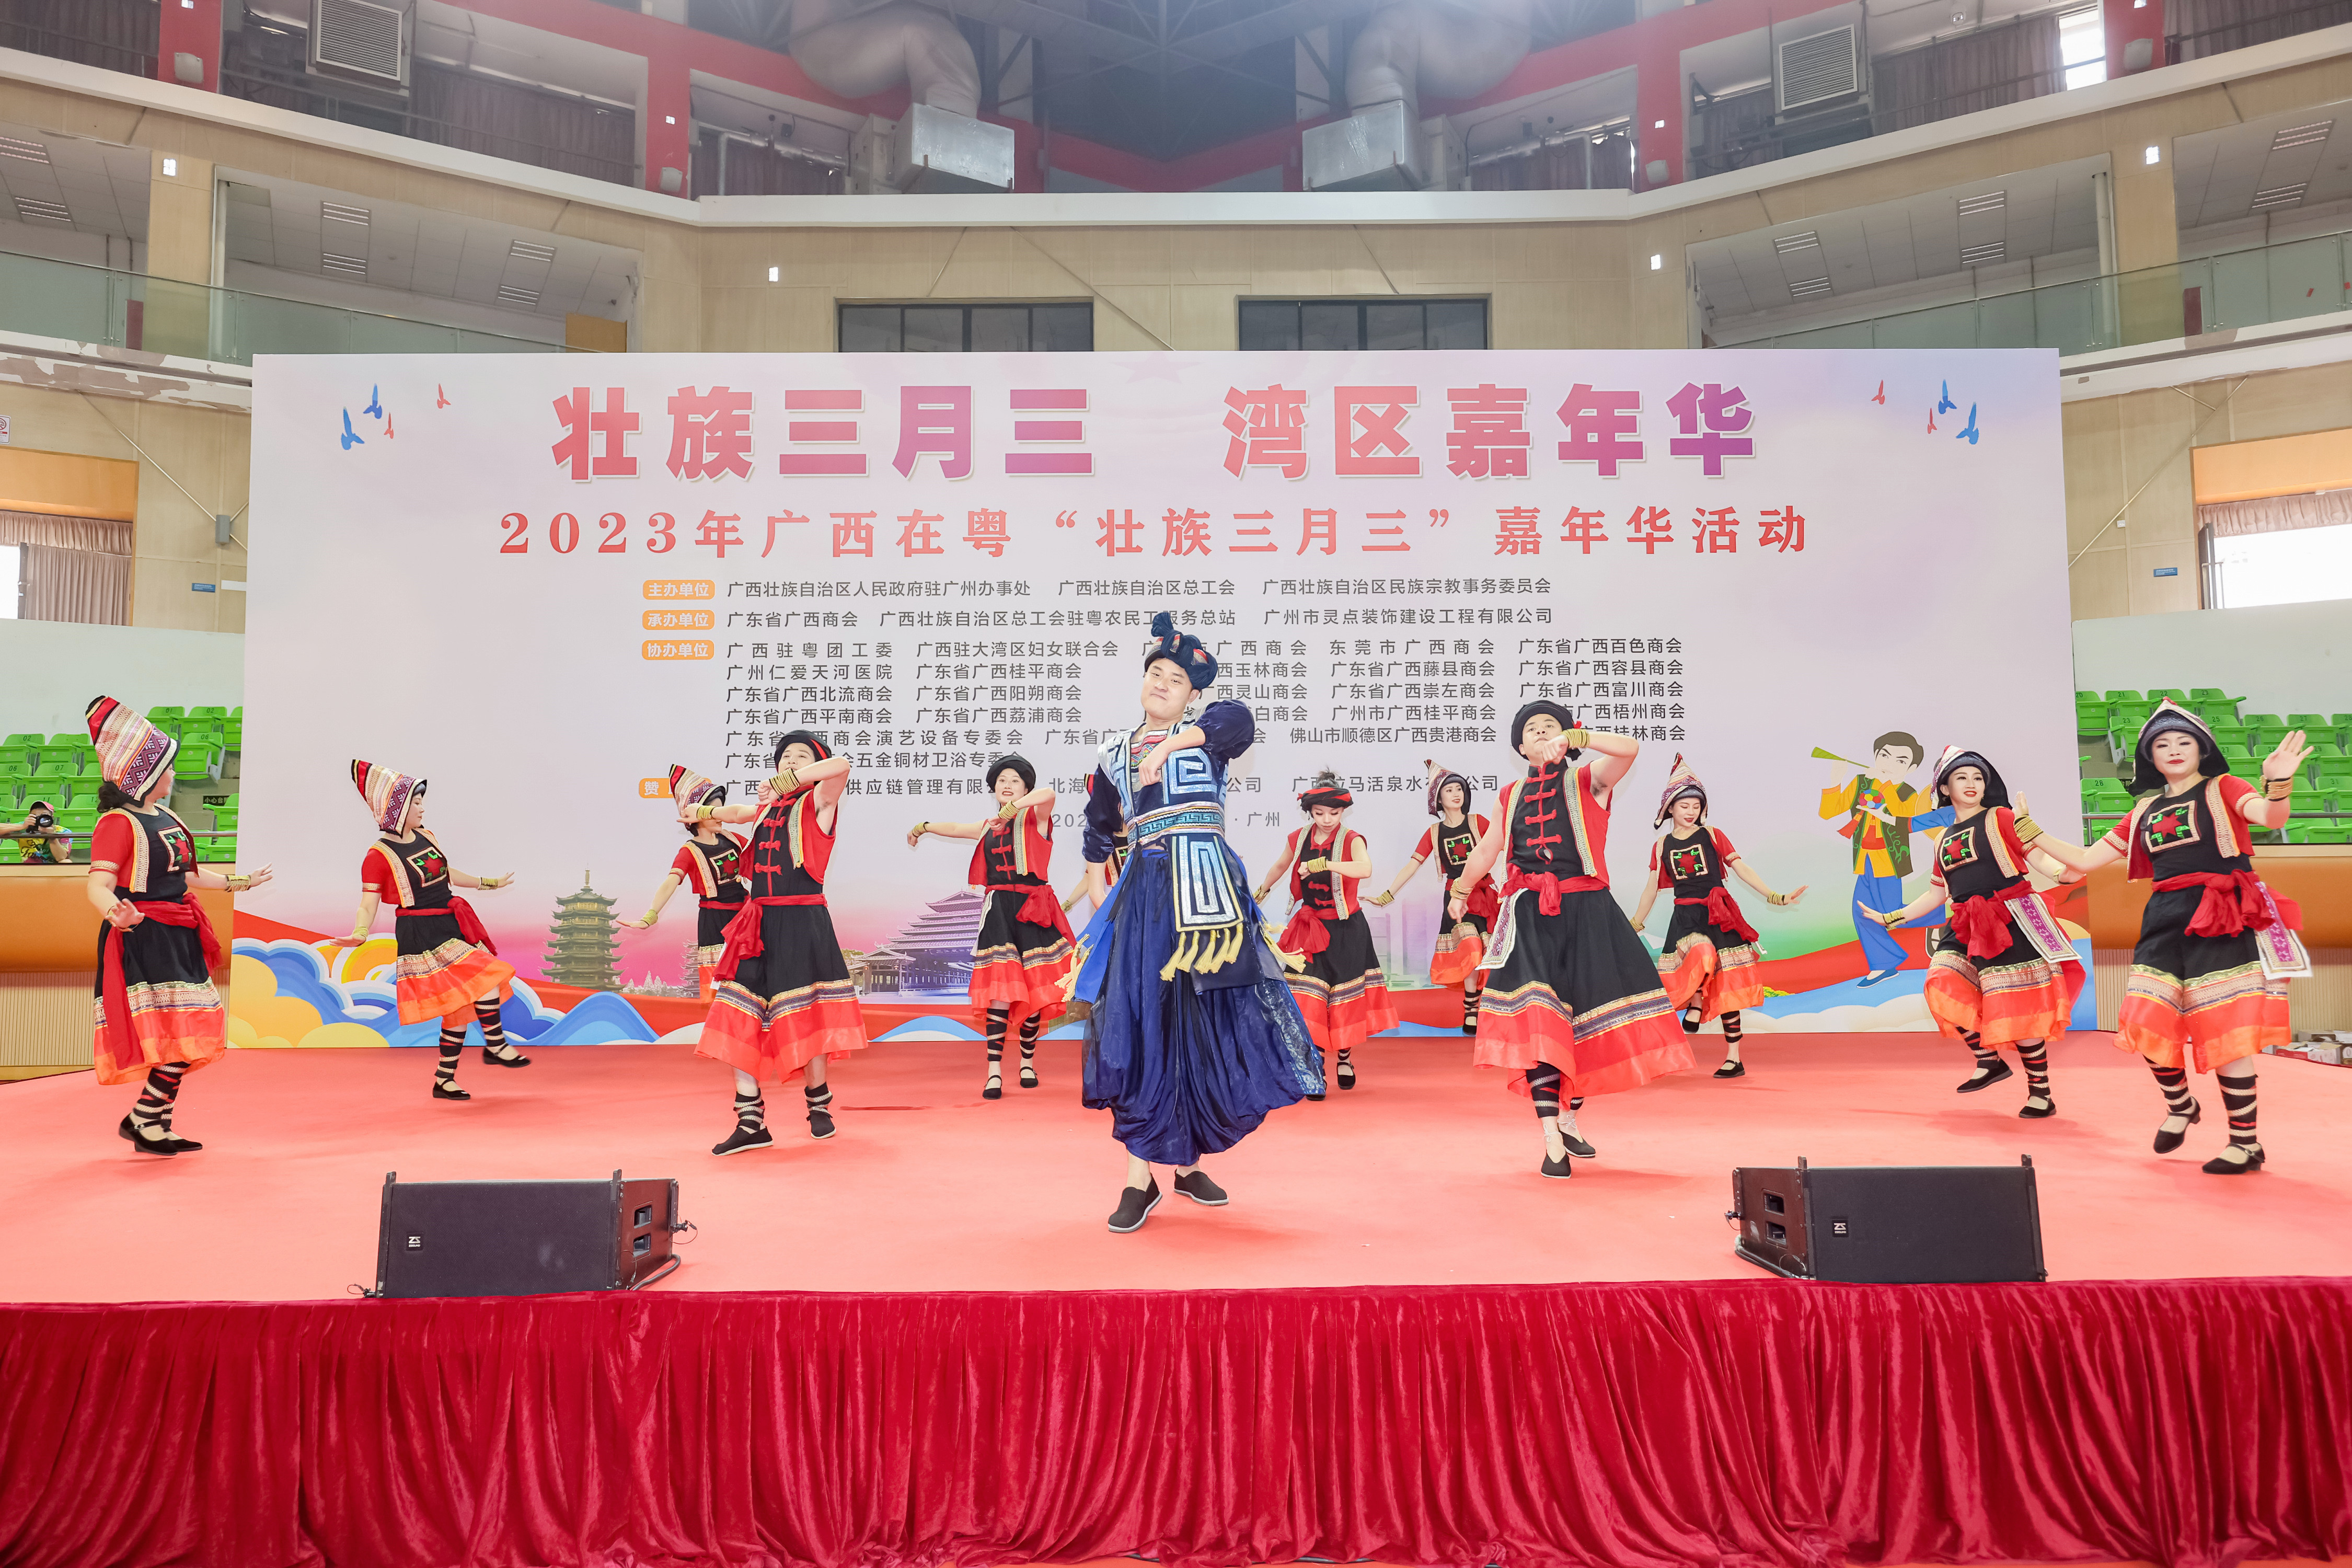 2023年广西在粤壮族三月三拉开序幕,现场精彩民族特色节目表演